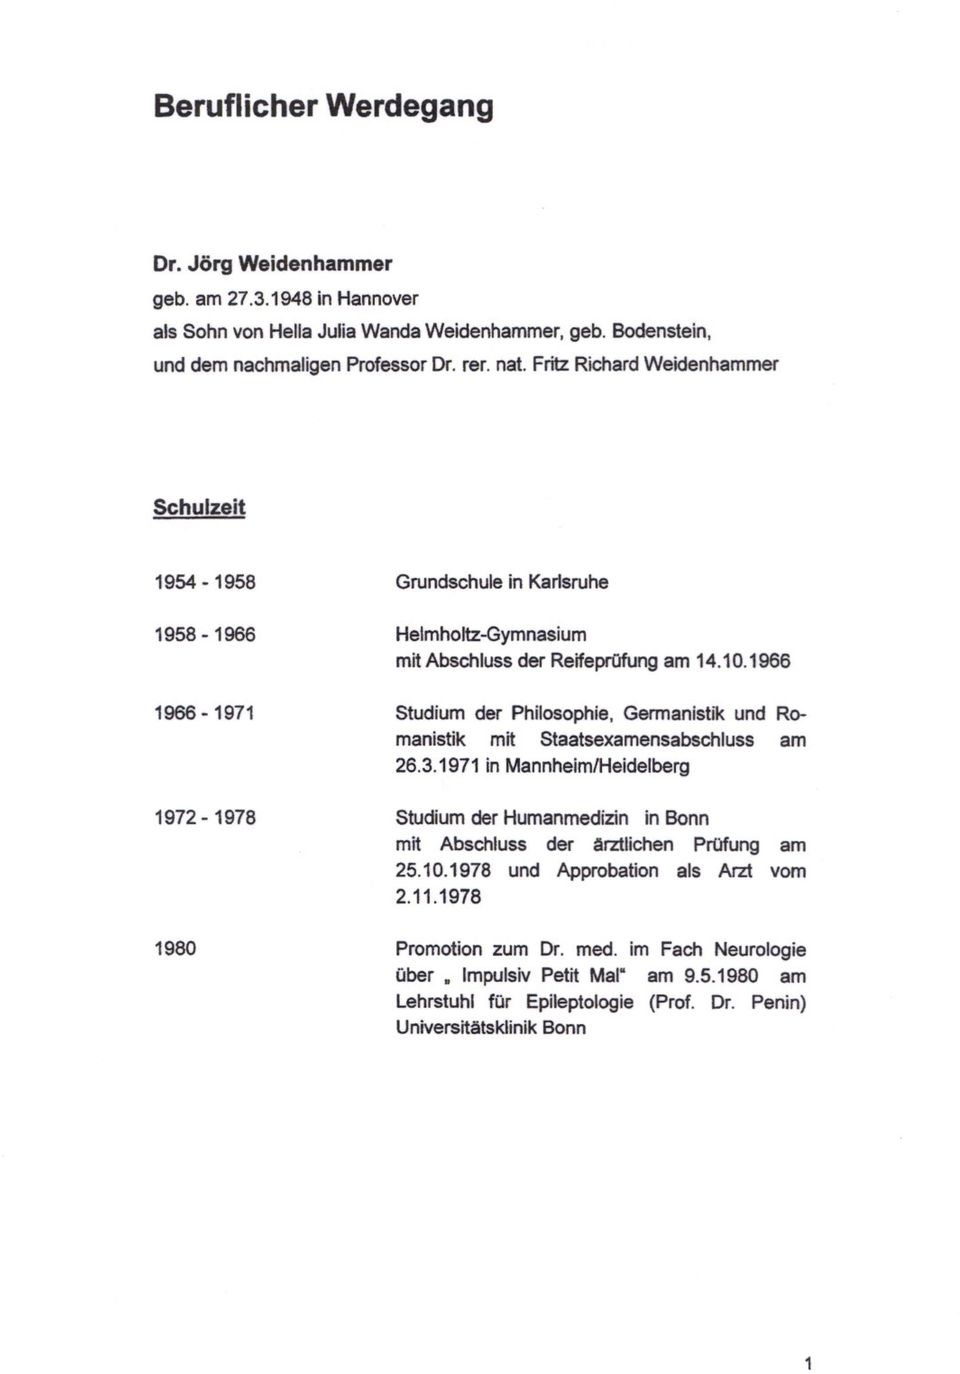 1966 Studium der Philosophie, Germanistik und Romanistik mit Staatsexamensabschluss am 26.3.